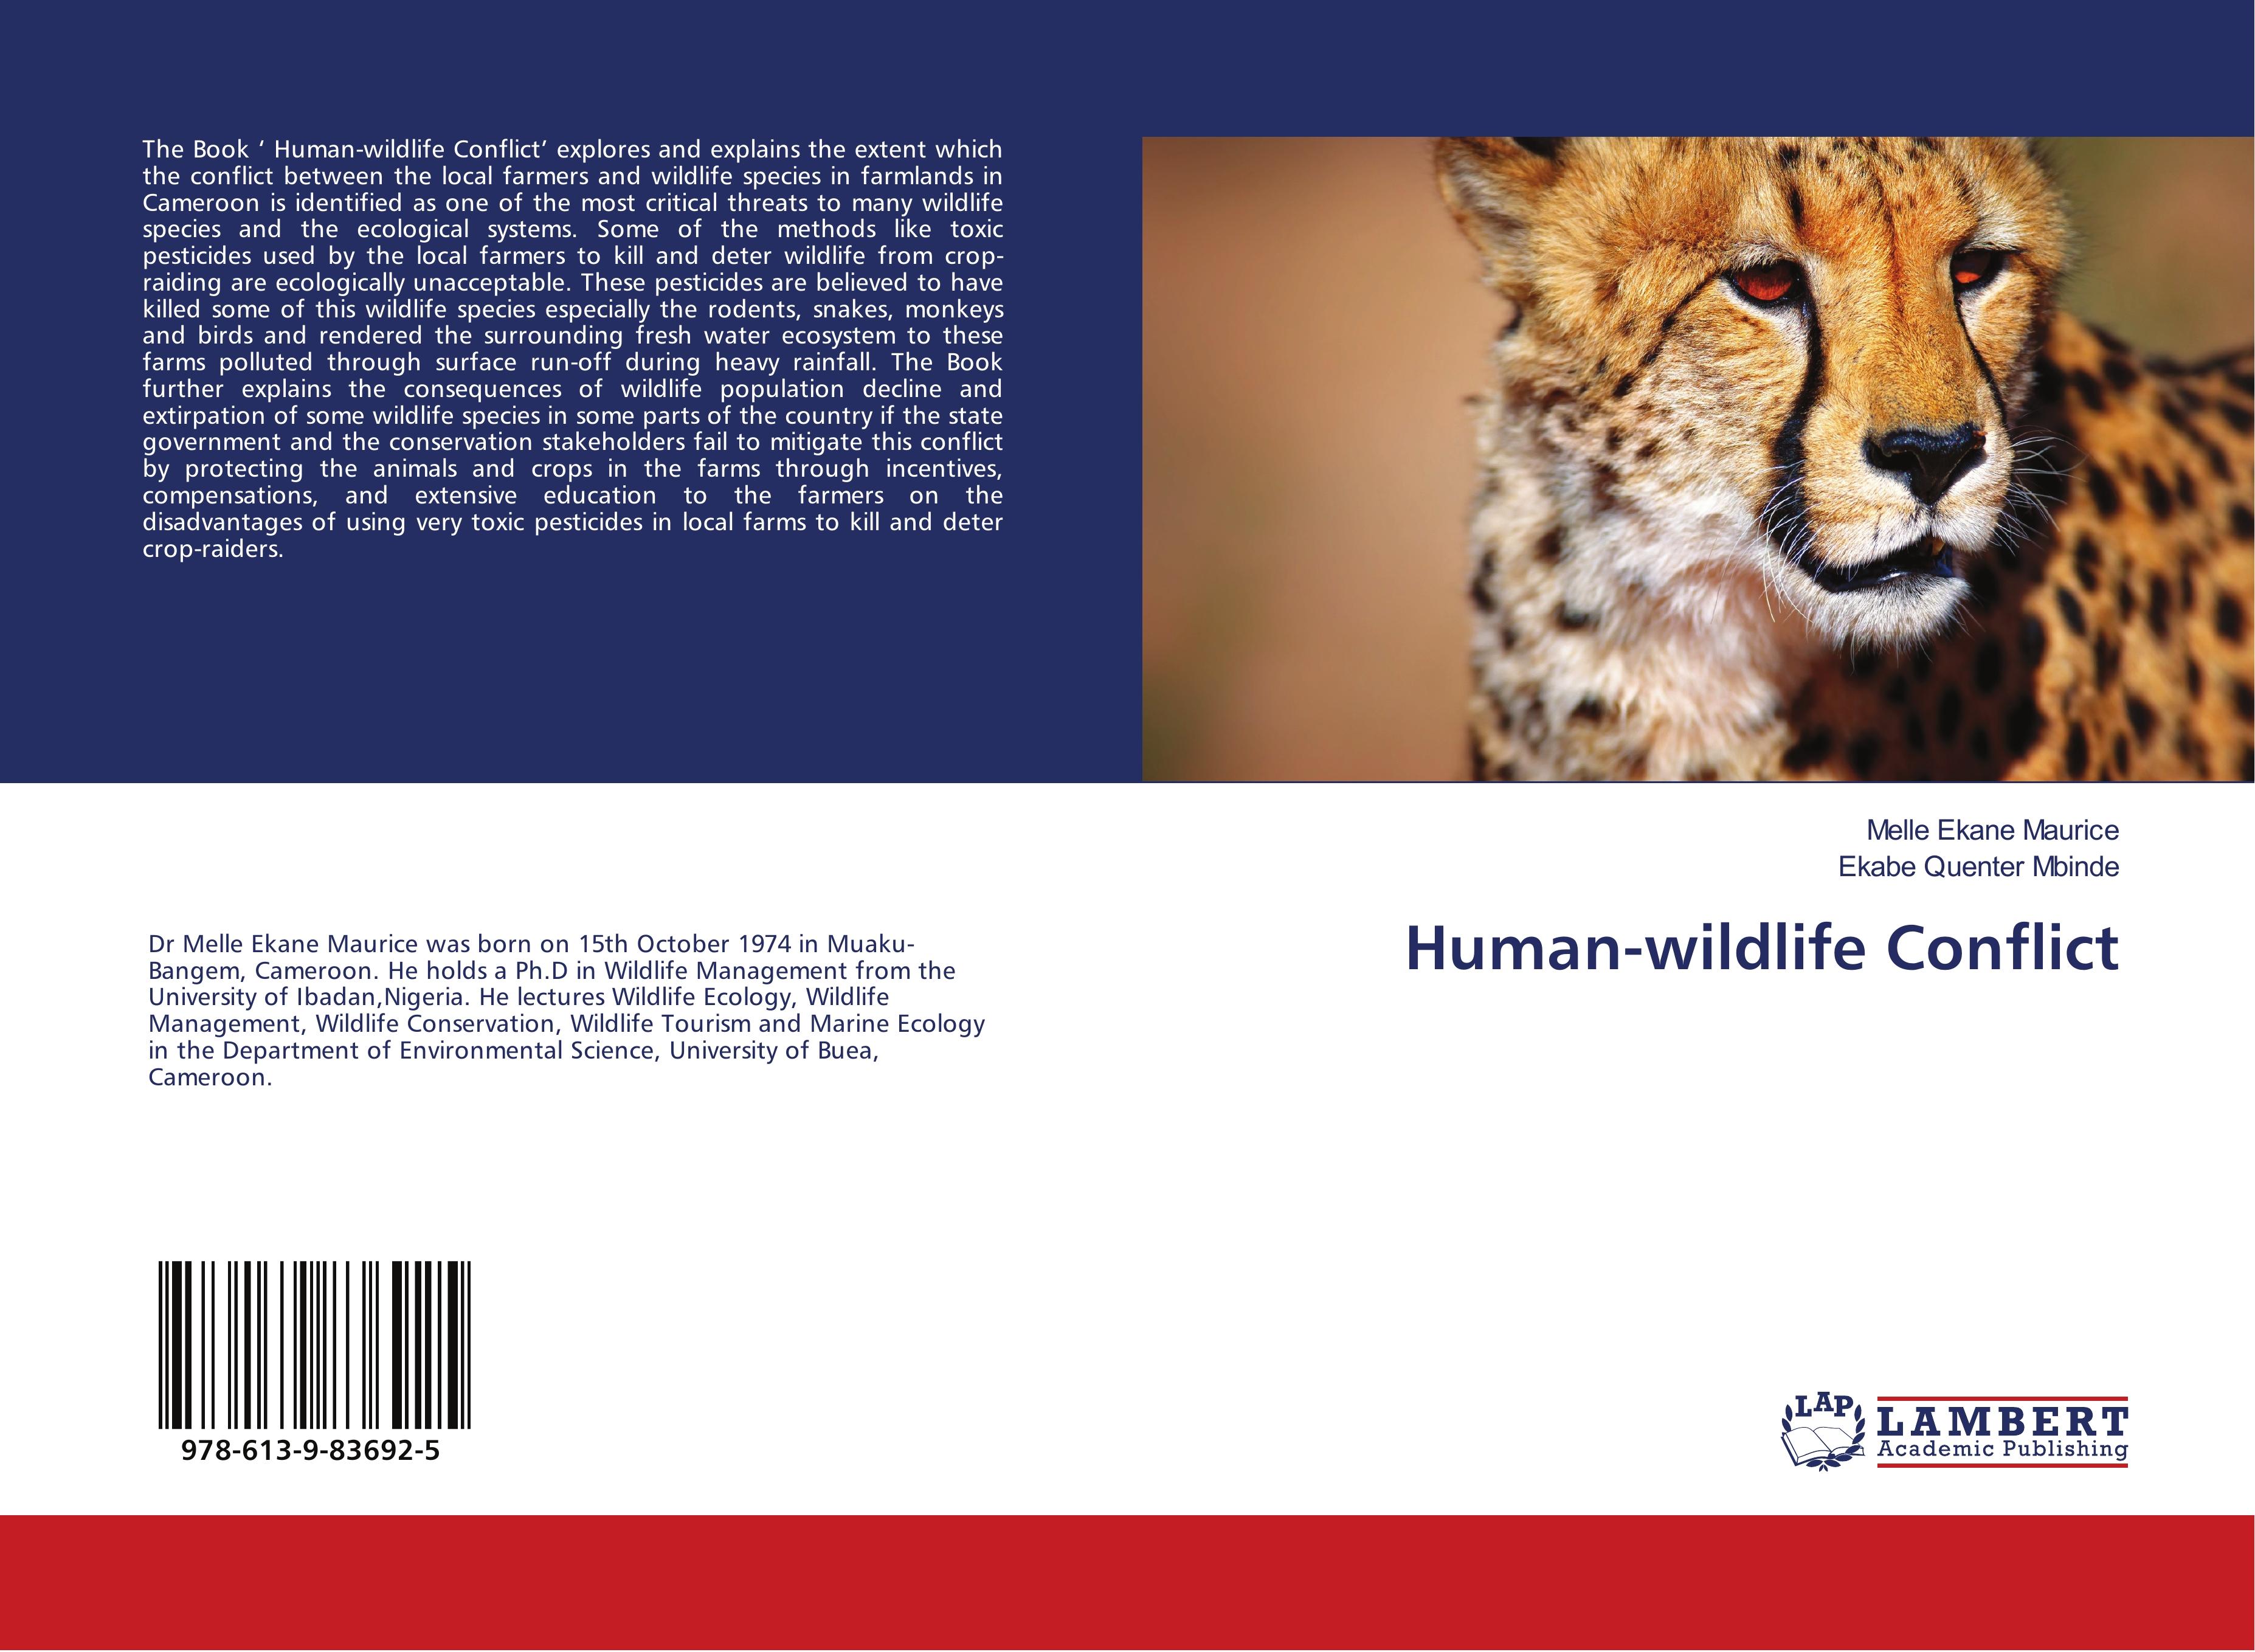 Human-wildlife Conflict  Melle Ekane Maurice  Taschenbuch  Paperback  Englisch  2018